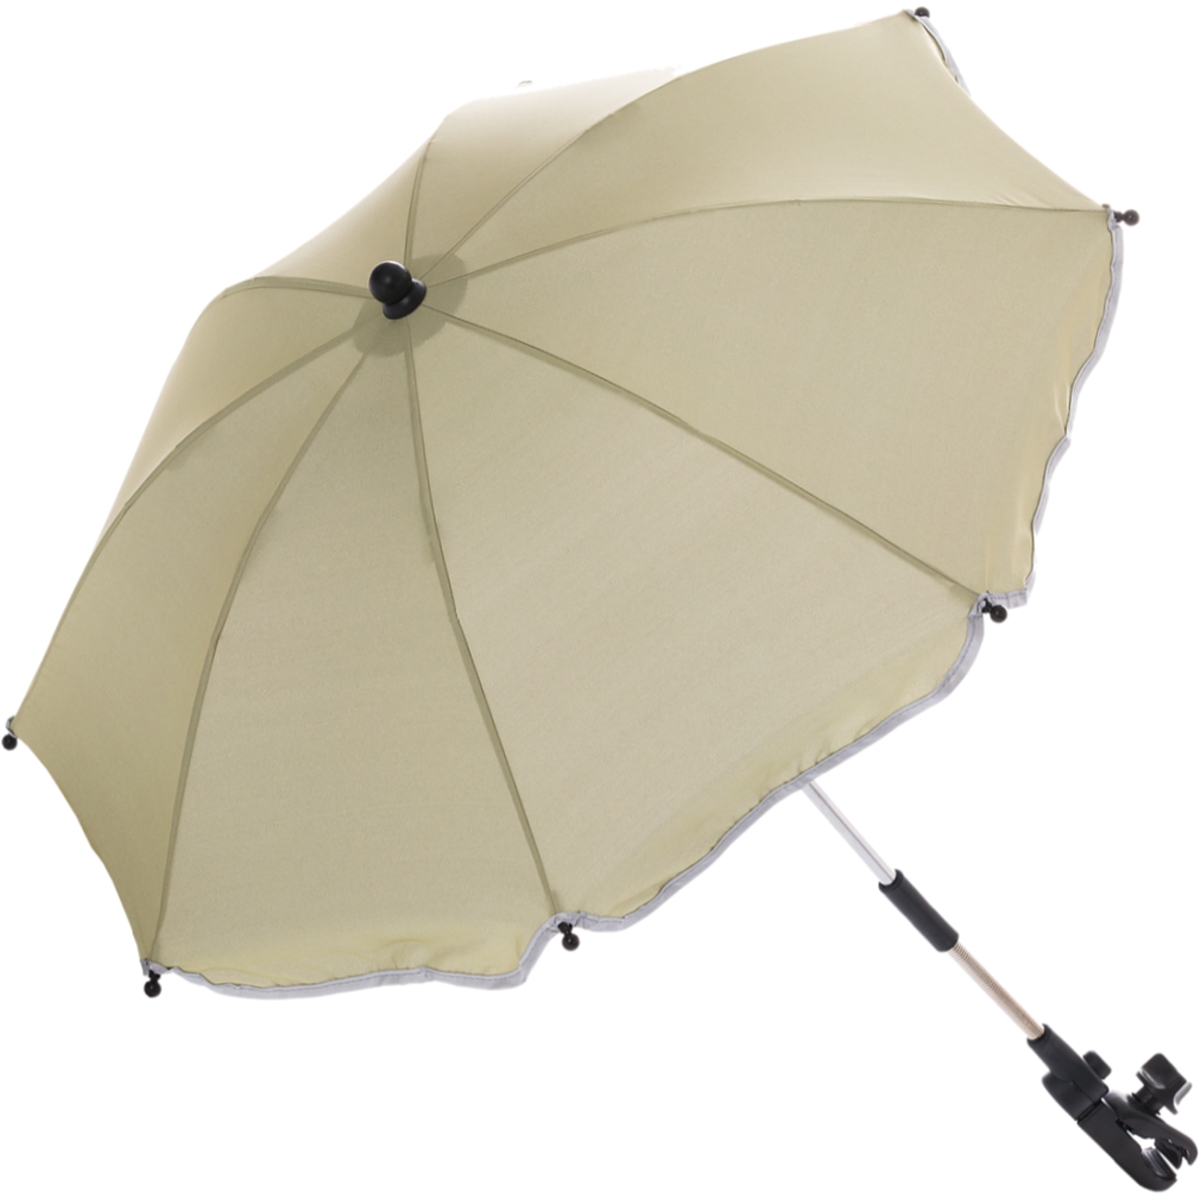 Baby Sonnenschirm Schirm Kompatibel Mit Bebe 9 Sonnendach Schutz Sonne & Regen 